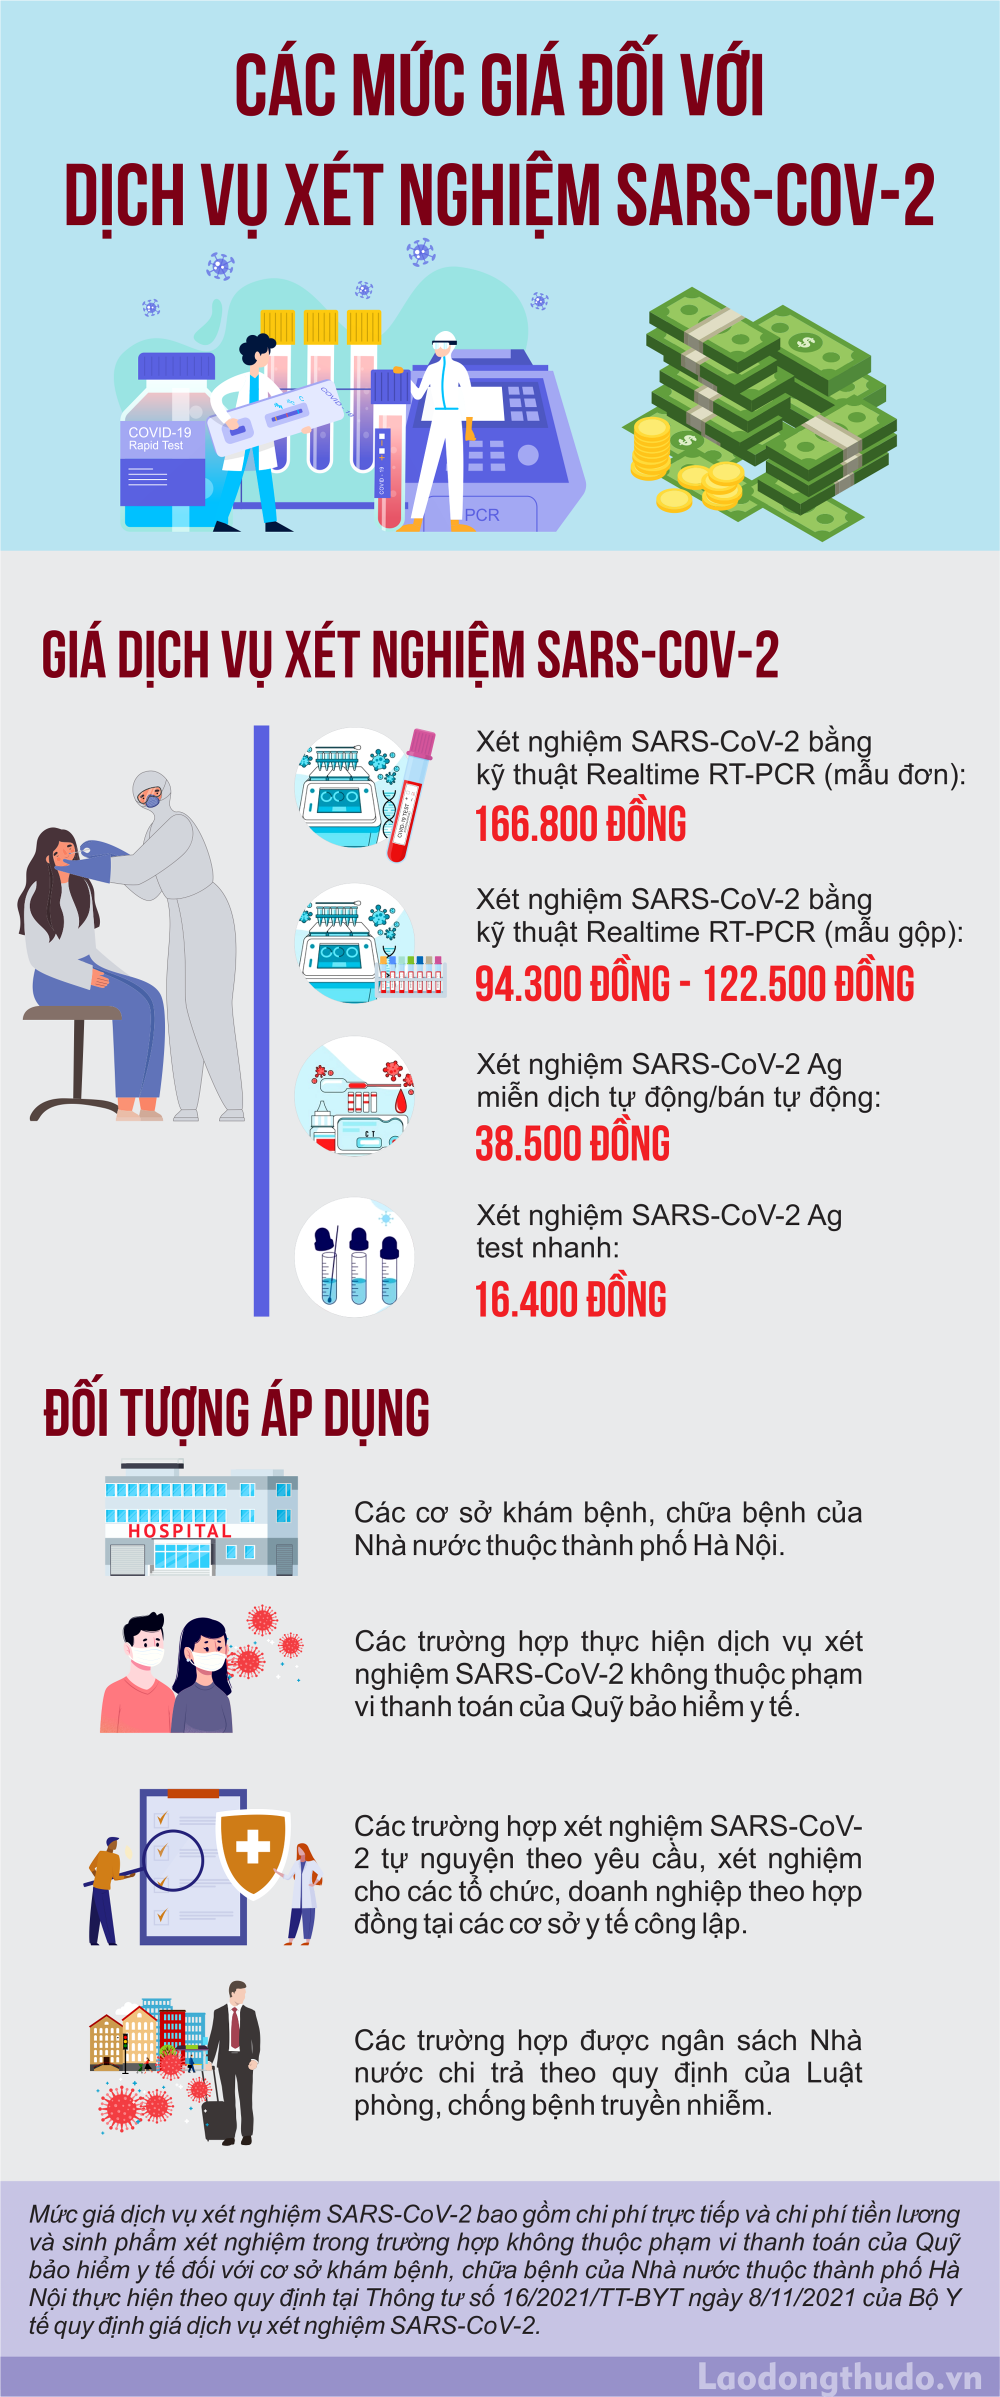 Infographic: Mức giá dịch vụ xét nghiệm SARS-CoV-2 đối với cơ sở khám chữa bệnh